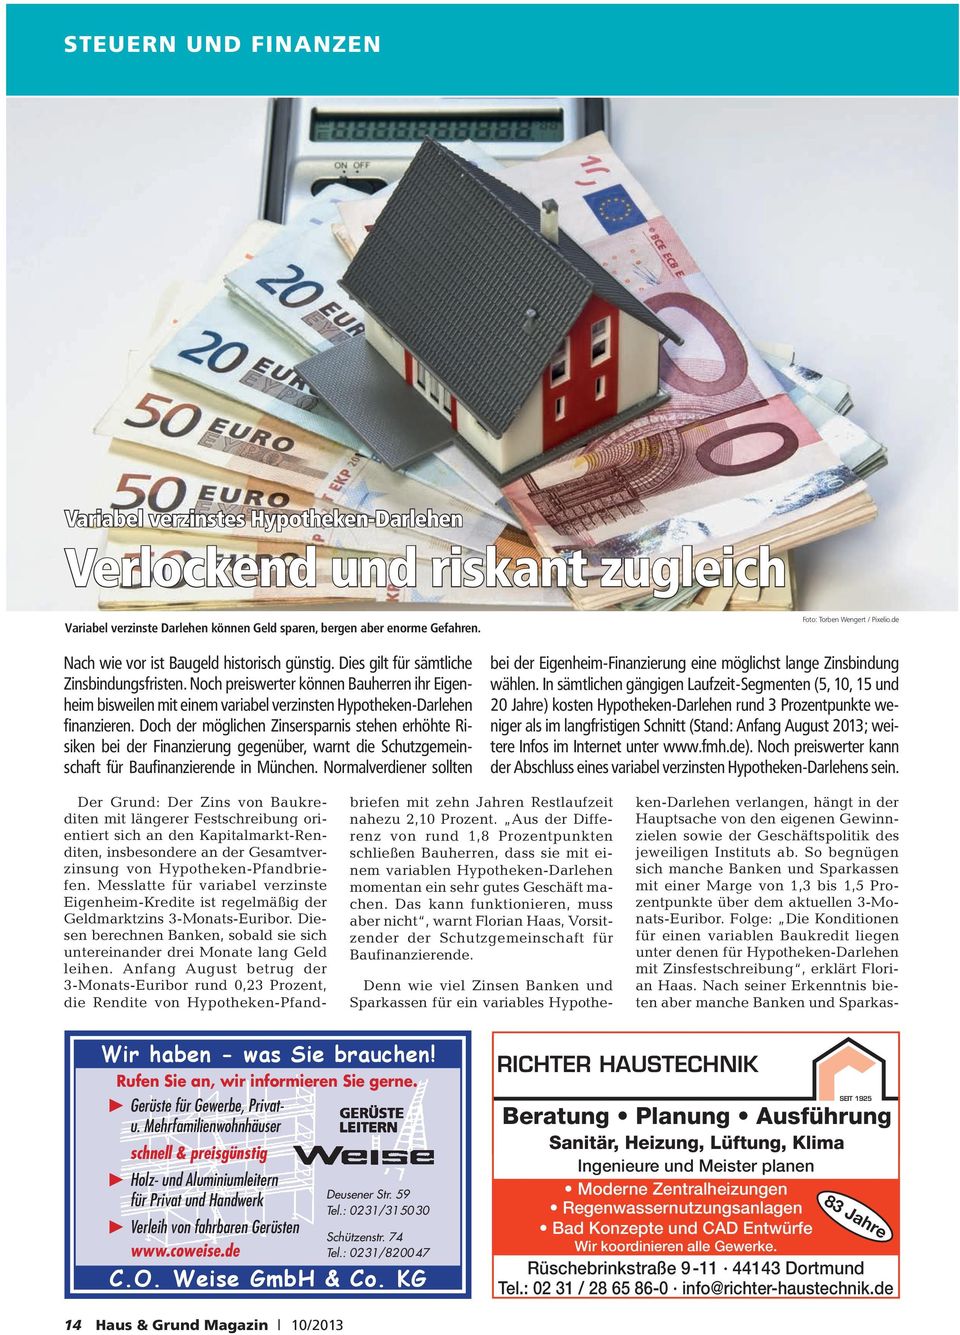 Noch preiswerter können Bauherren ihr Eigenheim bisweilen mit einem variabel verzinsten Hypotheken-Darlehen finanzieren.